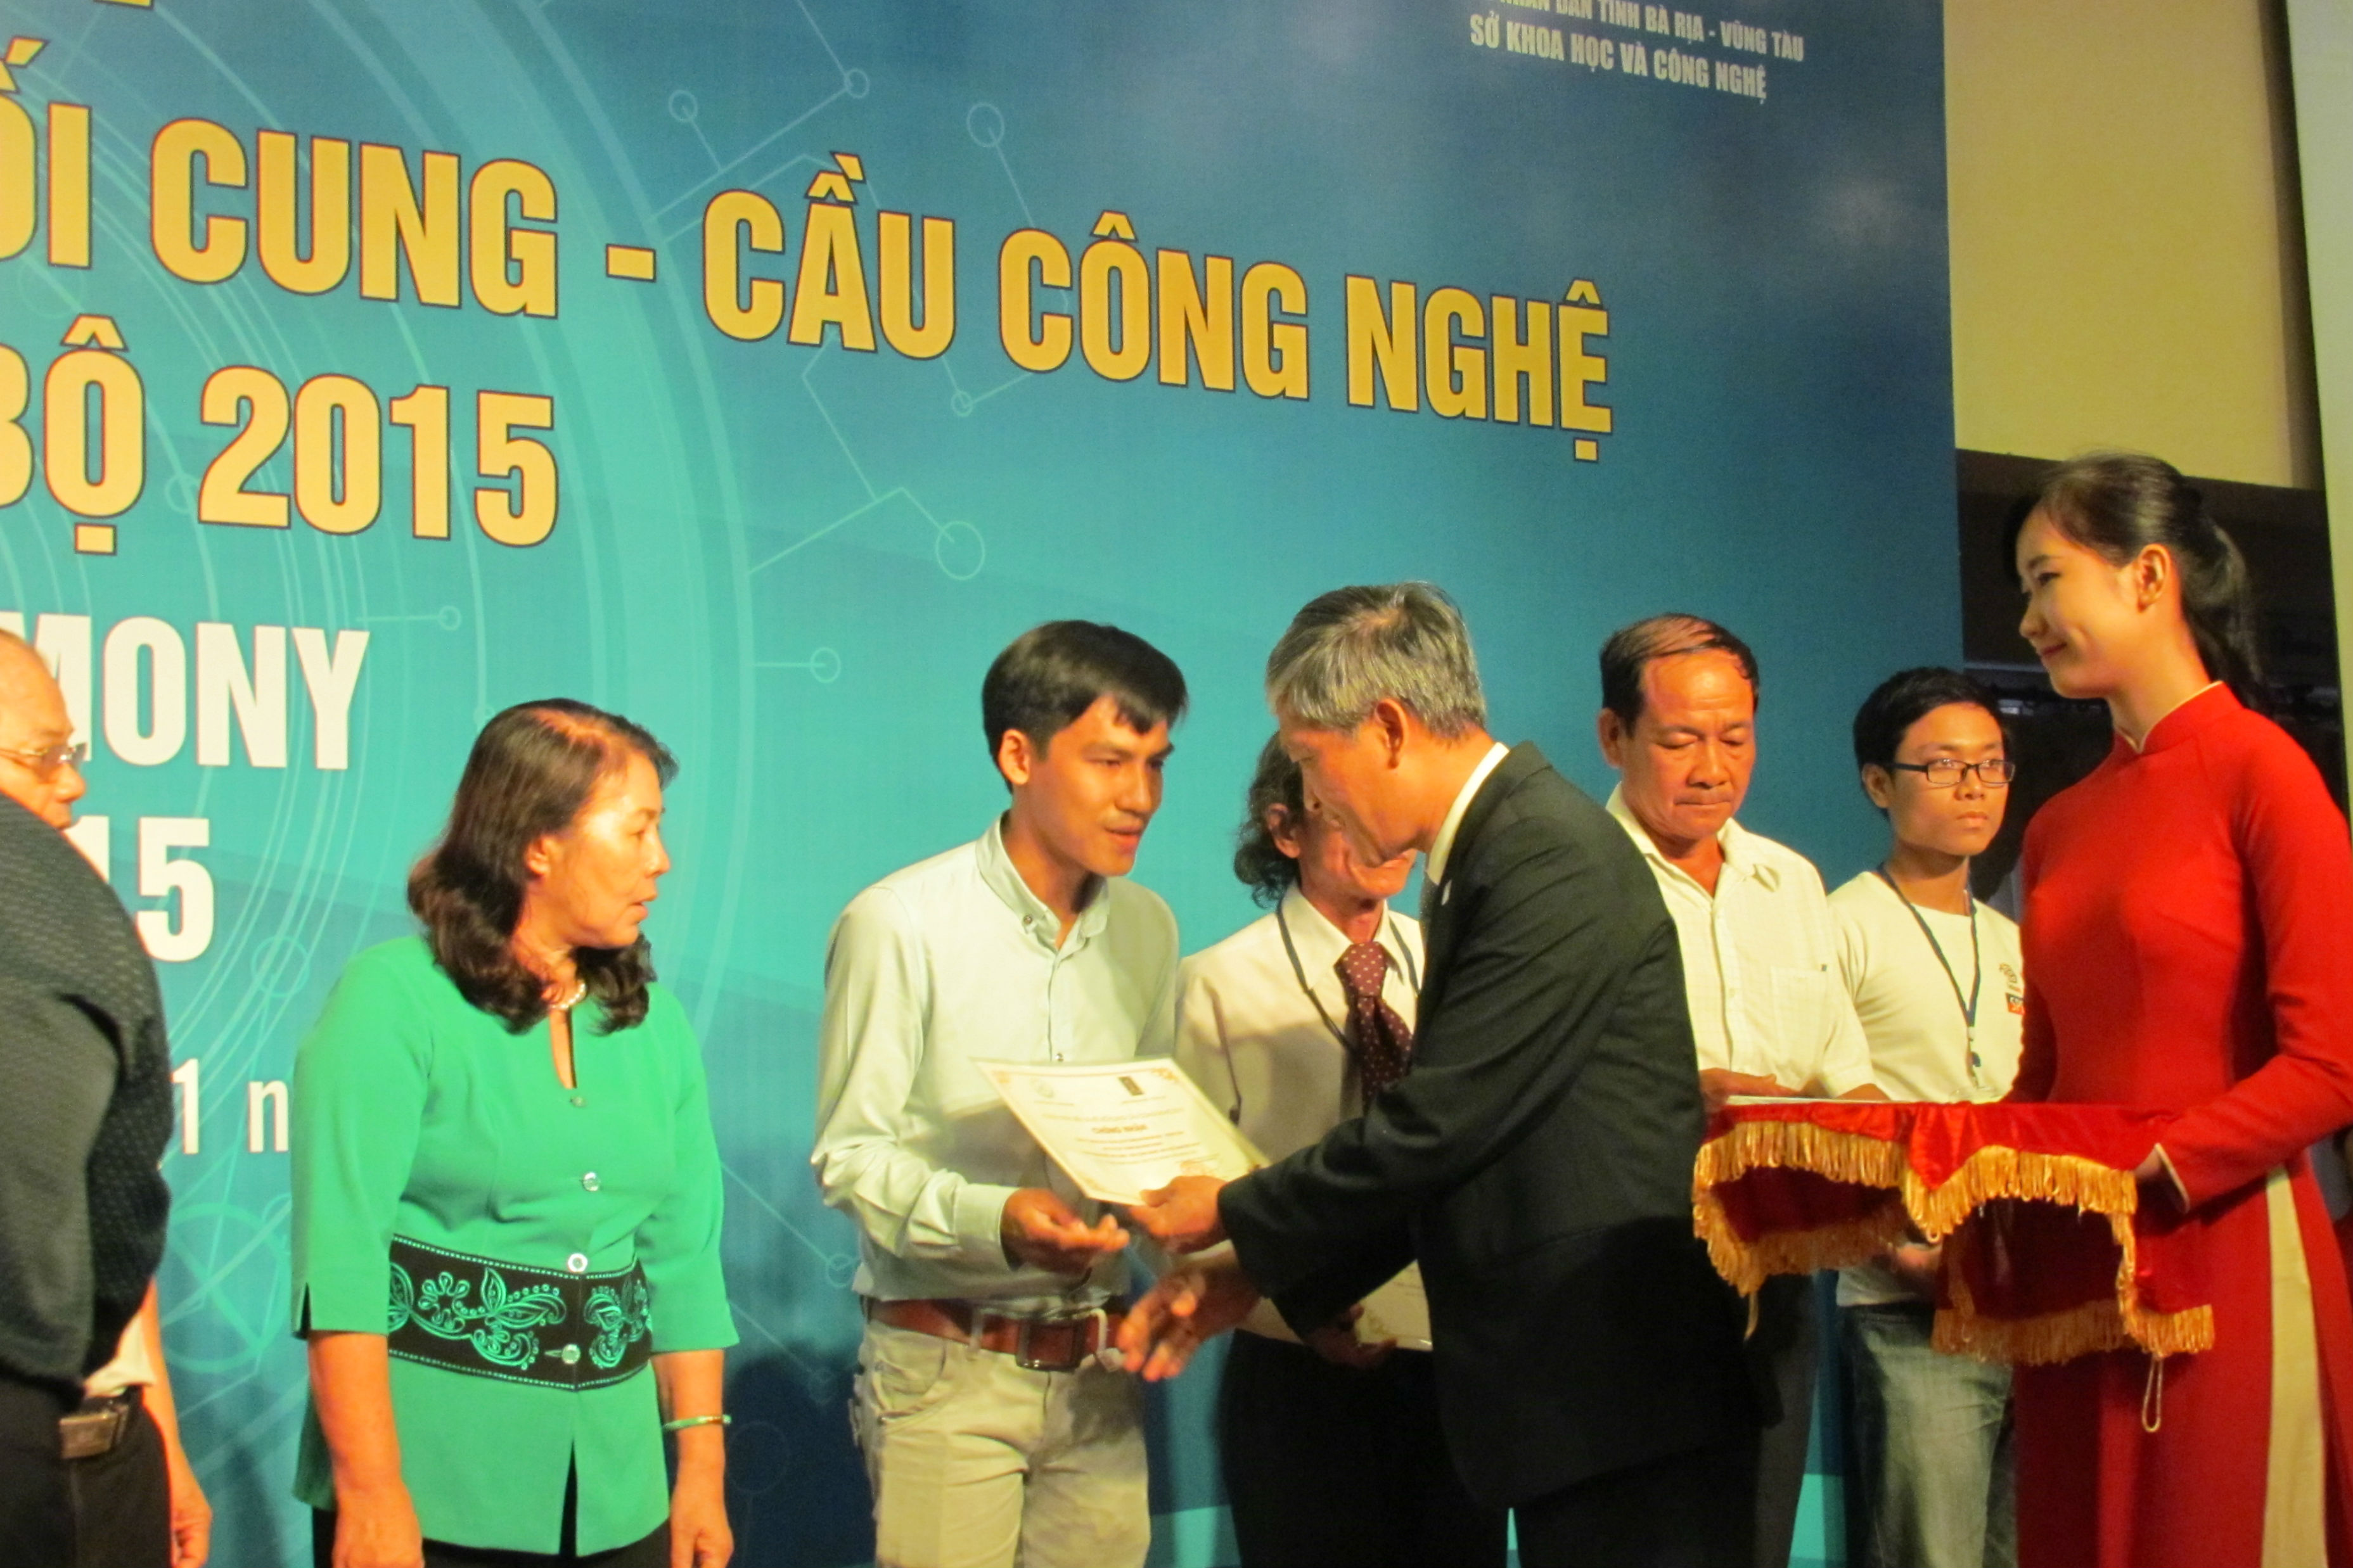 Thức trưởng Trần Văn Tùng và Phó Chủ tịch Lê Thanh Dũng trao giấy chứng nhận cho các đơn vị tham gia Tech Demo 2015